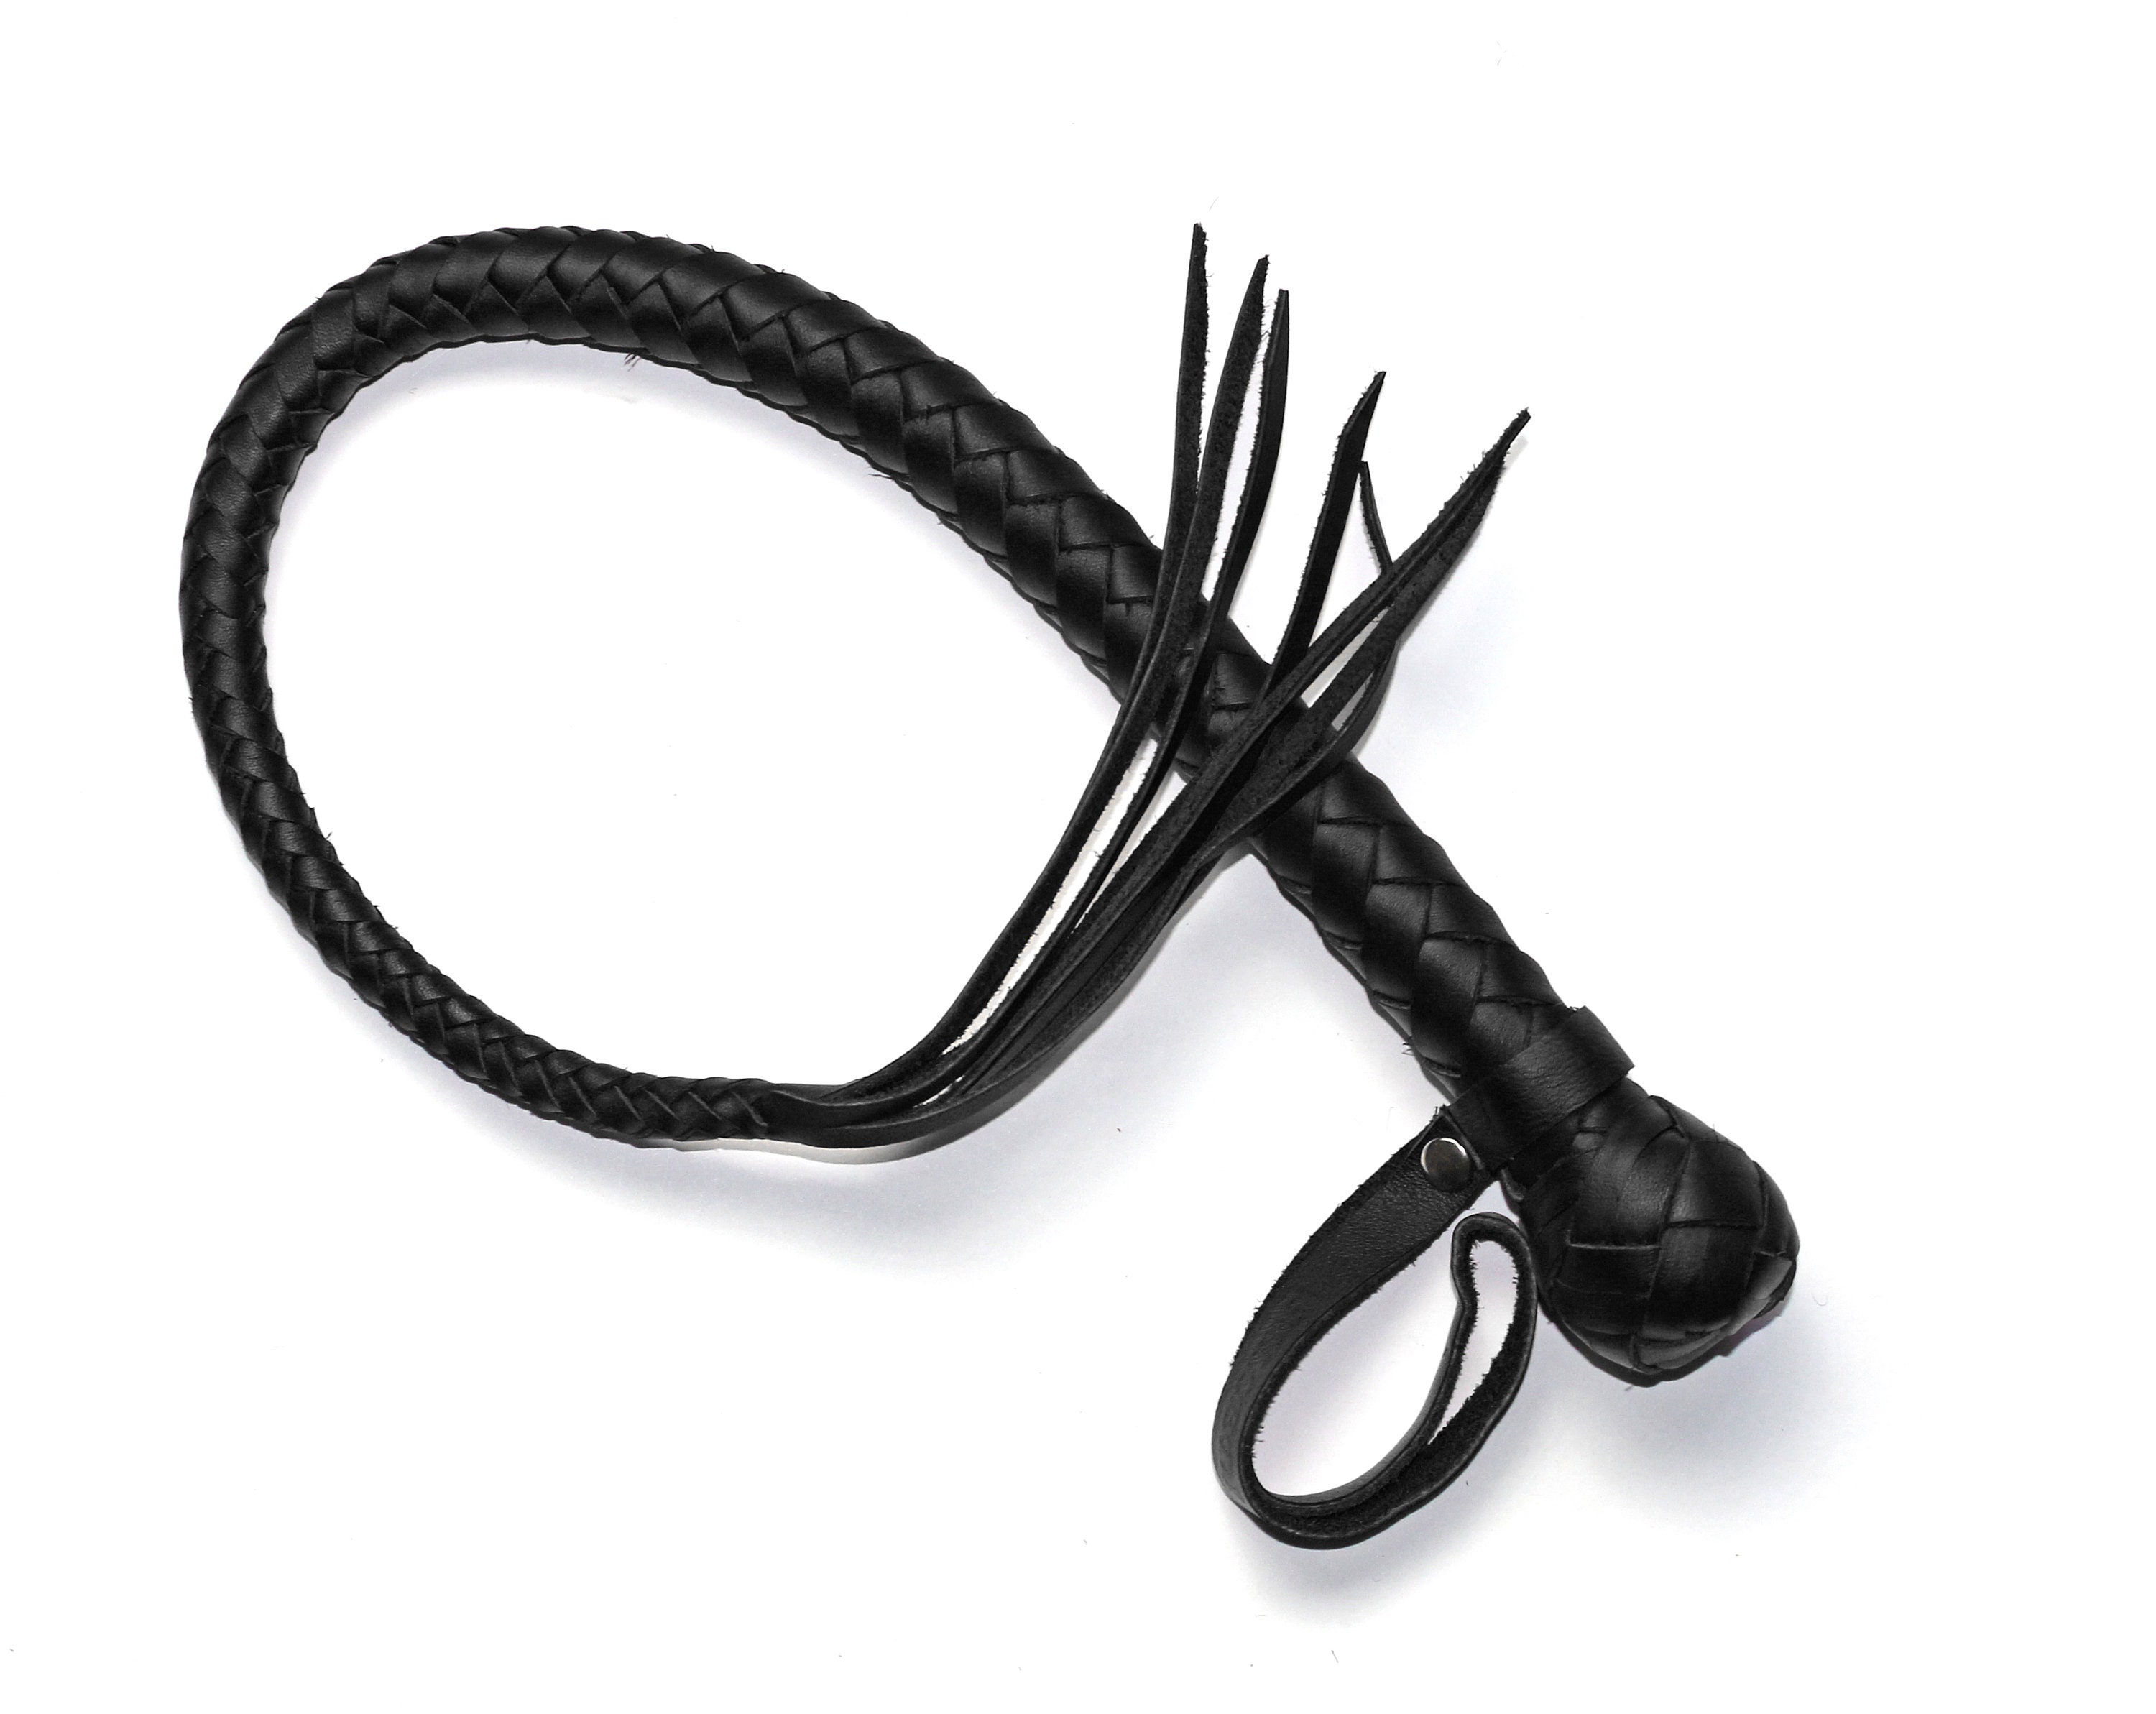 Single Tail Whip / Tassel Whip / BDSM Whip / Leather Whip for | Etsy